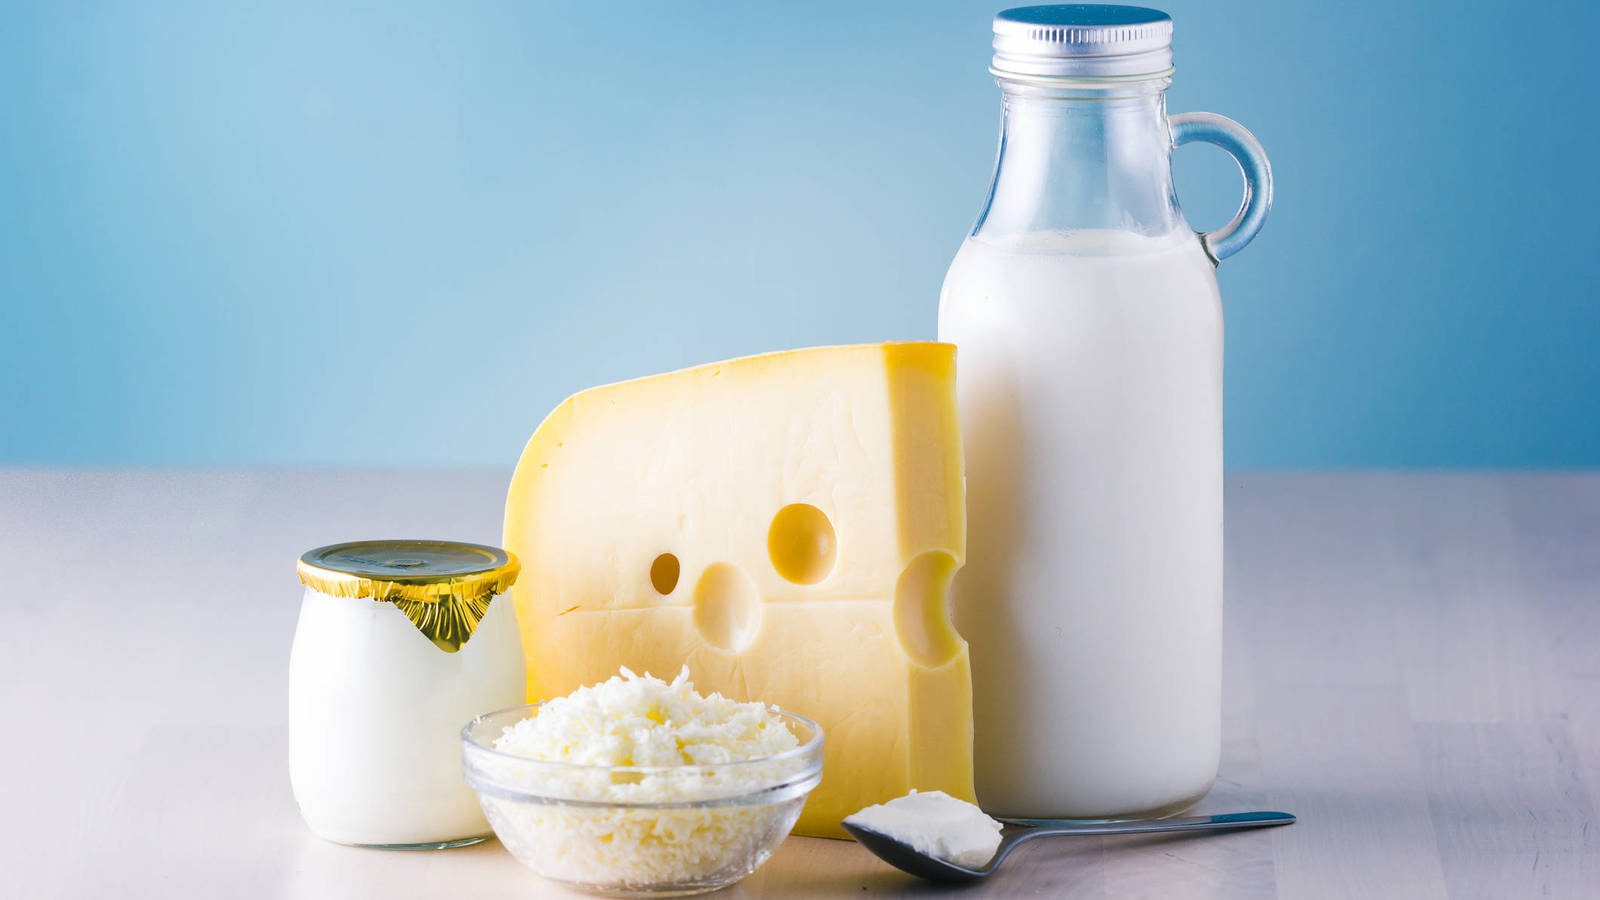 Productos a base de lácteos: yogurt y quesos